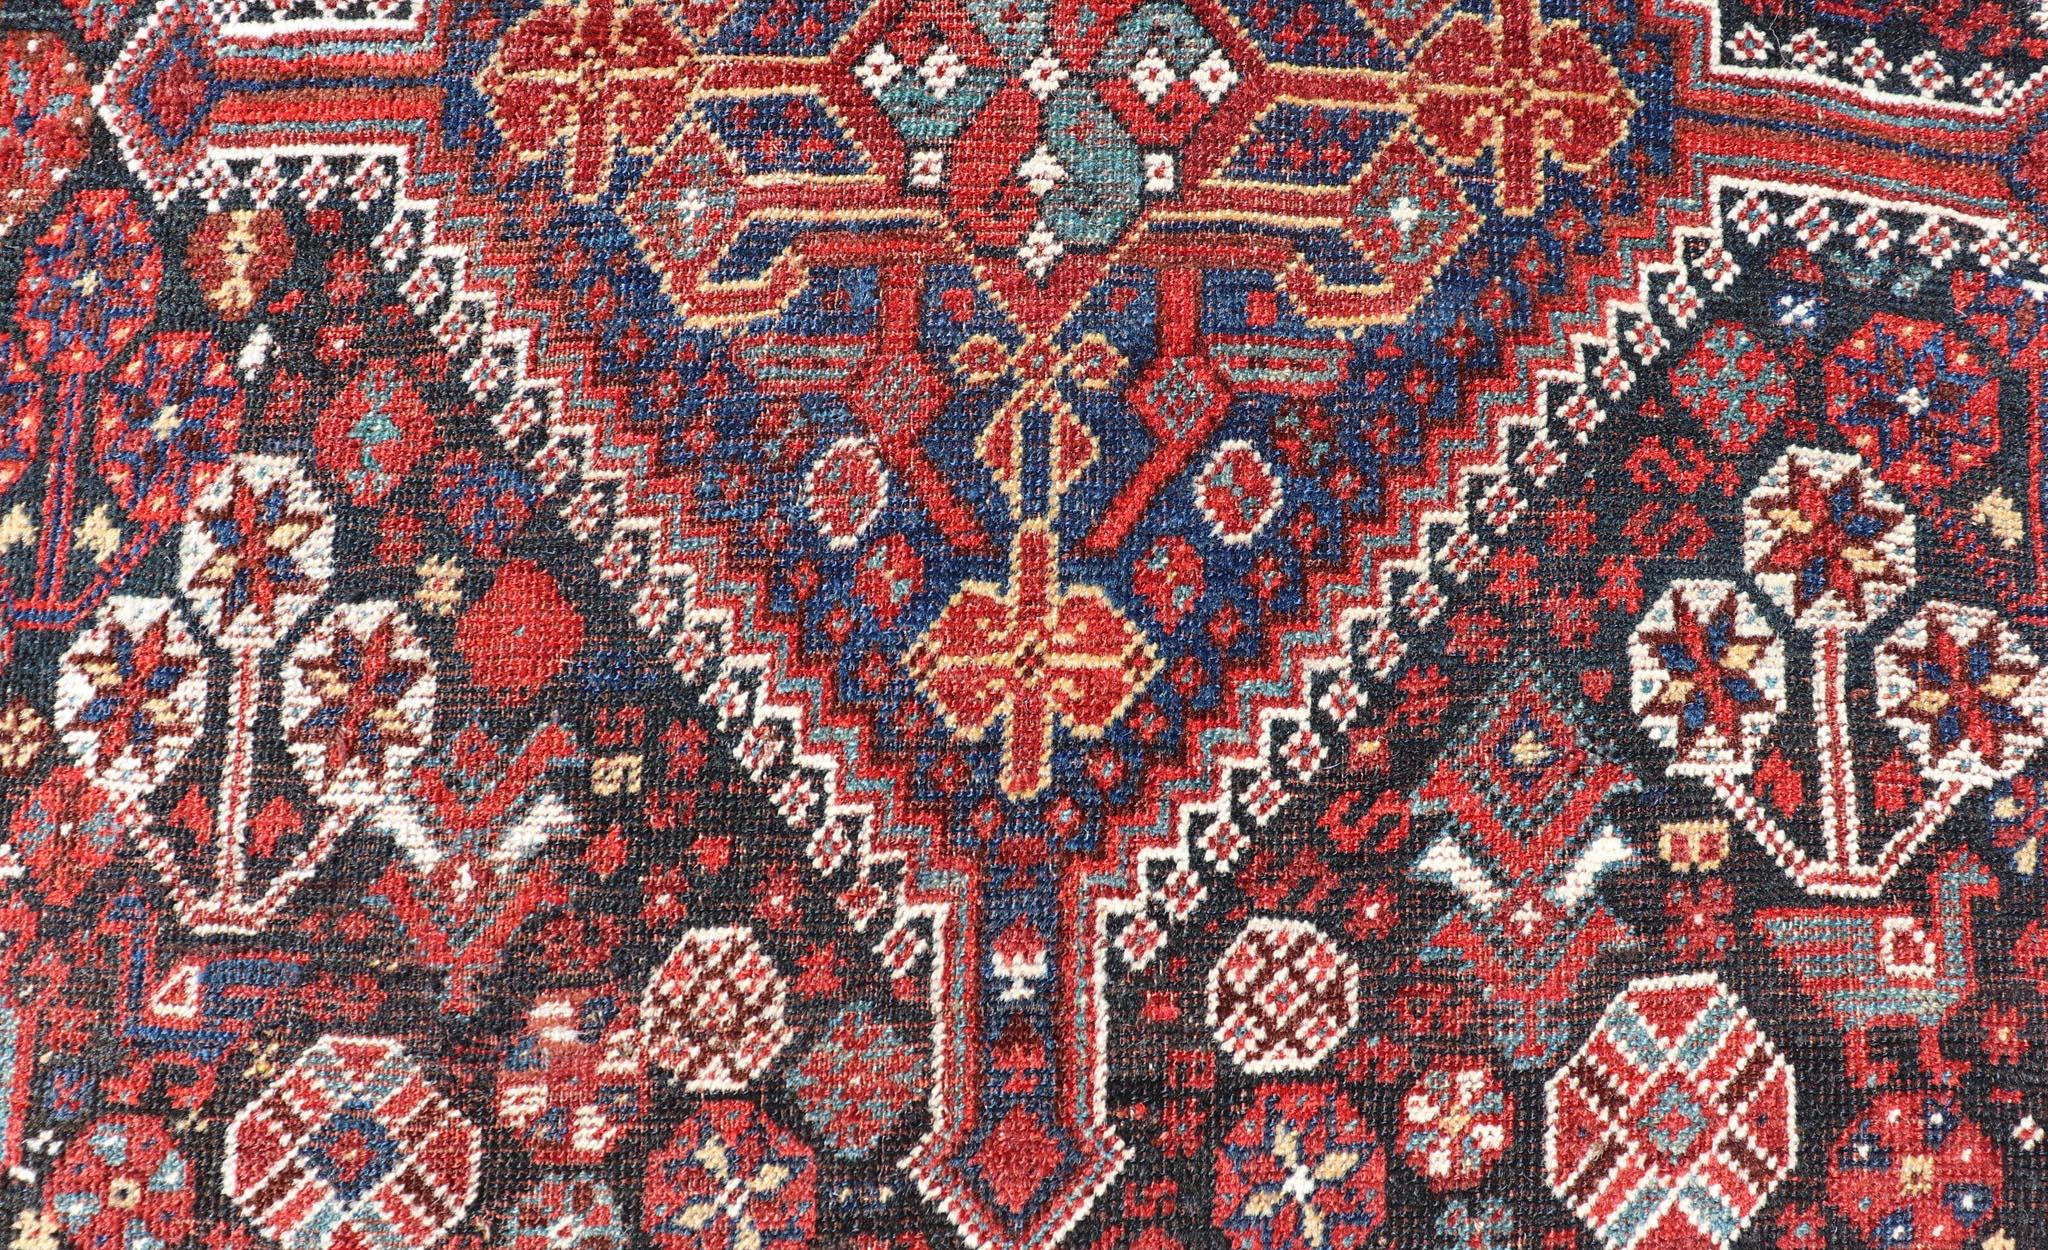 Cet antique tapis persan Qashqai a été noué à la main en laine et présente un motif subgéométrique multicolore. Une bordure complémentaire à plusieurs niveaux englobe la totalité de la pièce, ce qui lui permet de s'adapter merveilleusement à une